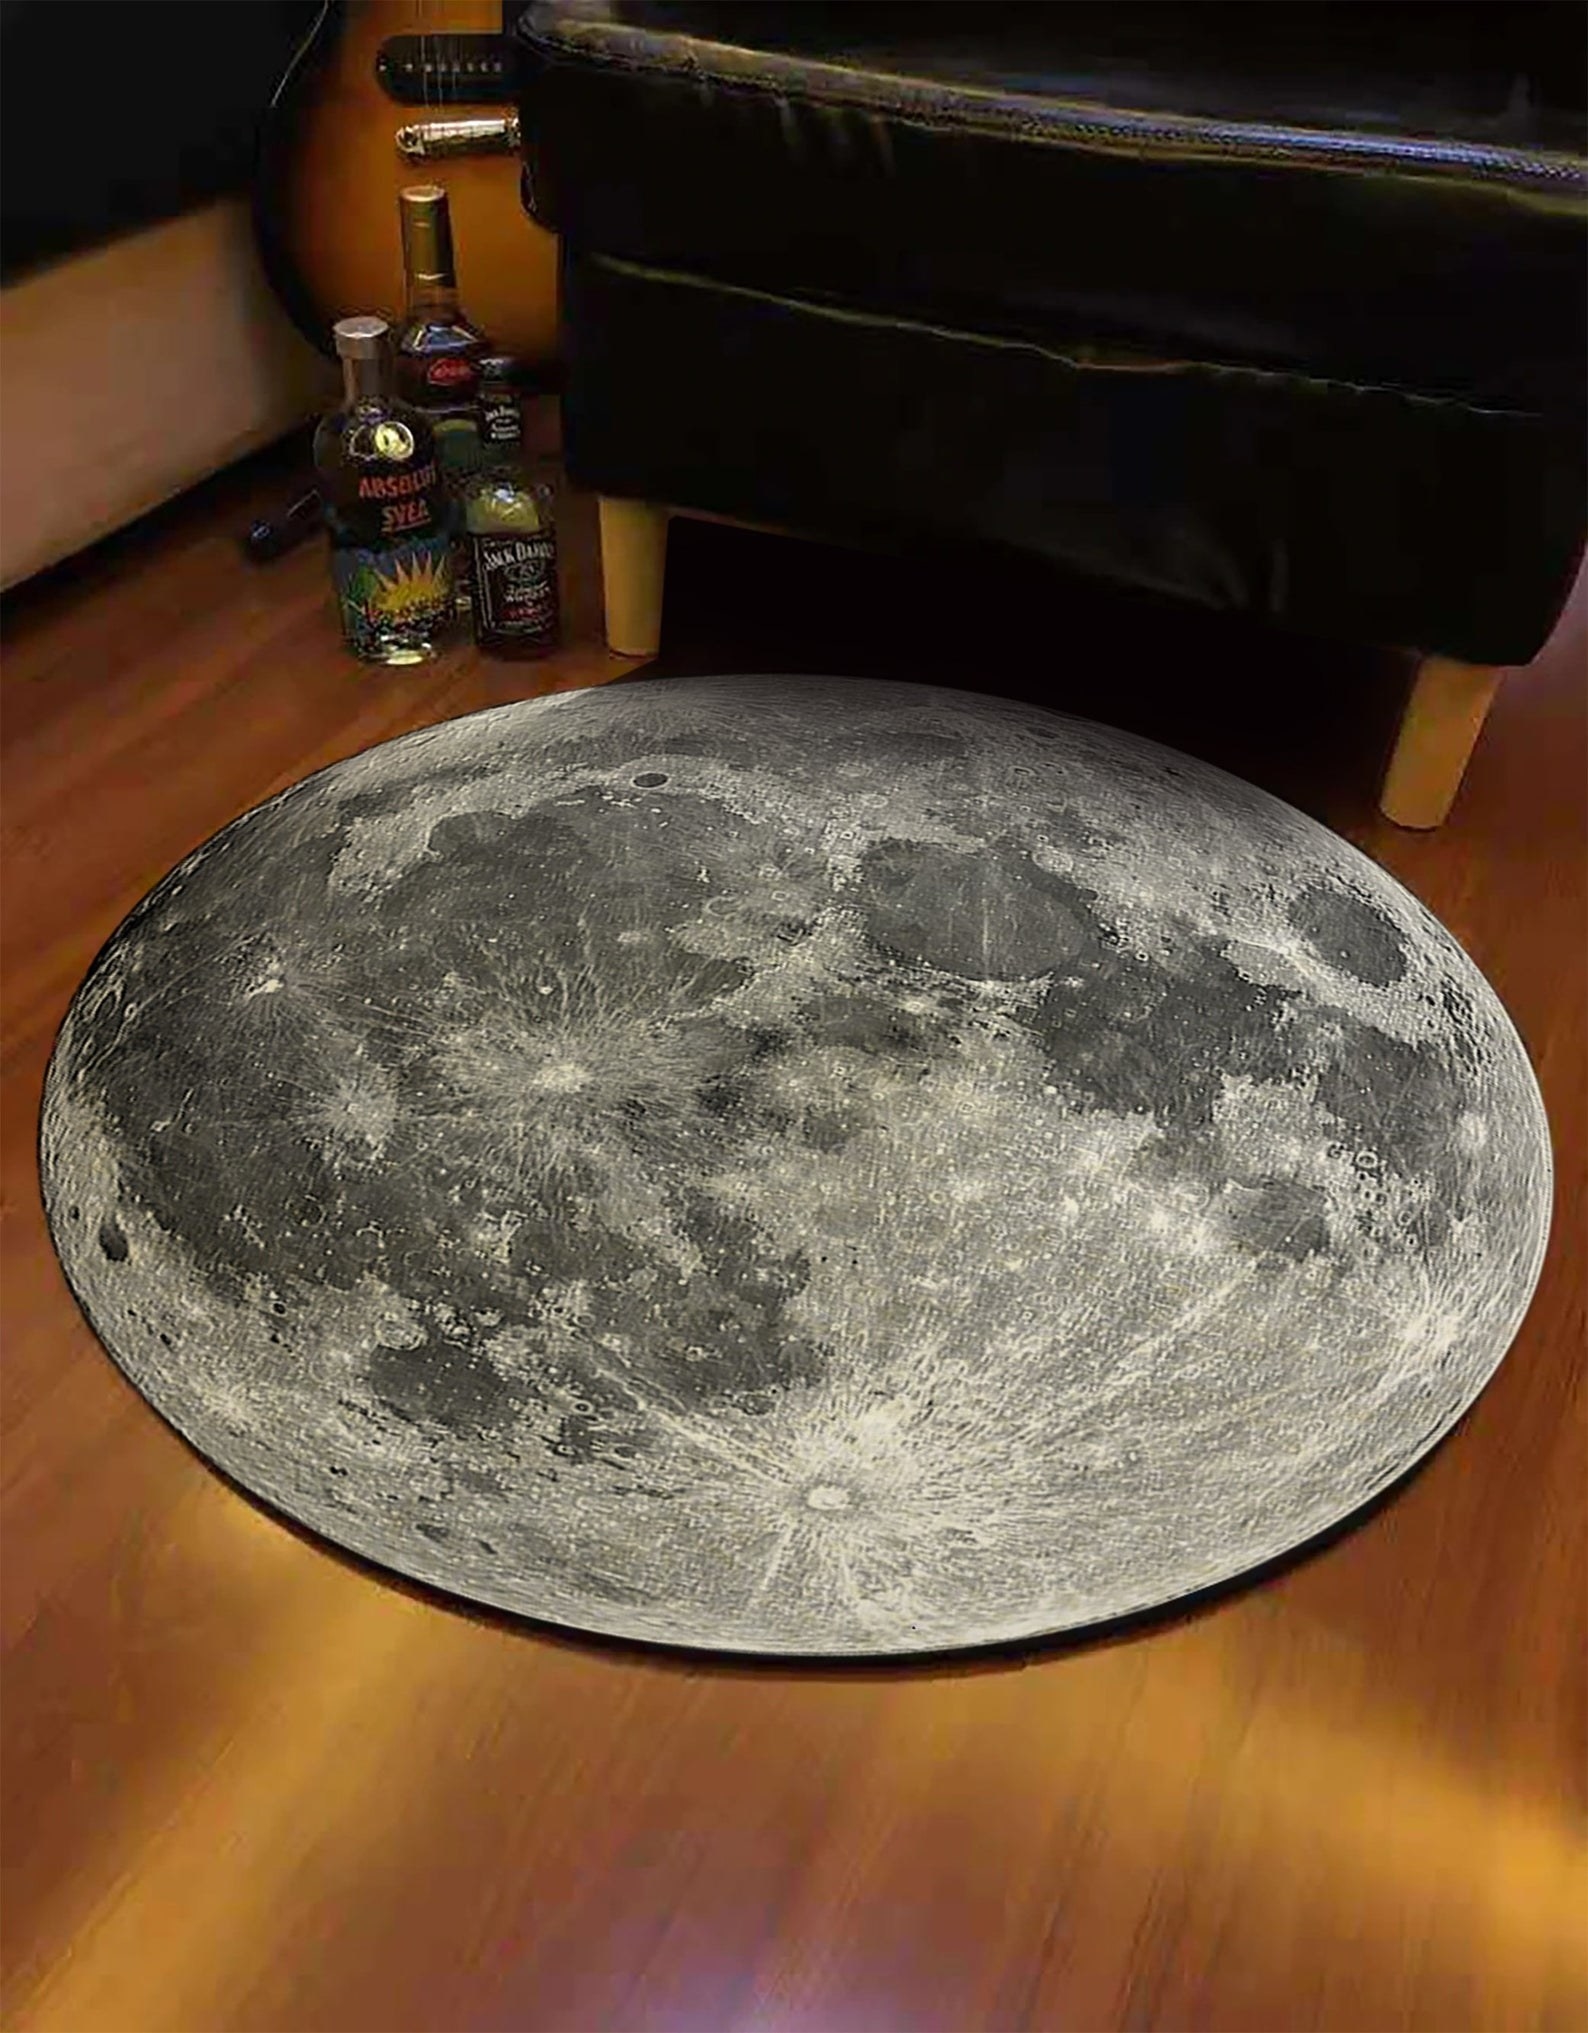 the 3D moon rug on a wooden floor